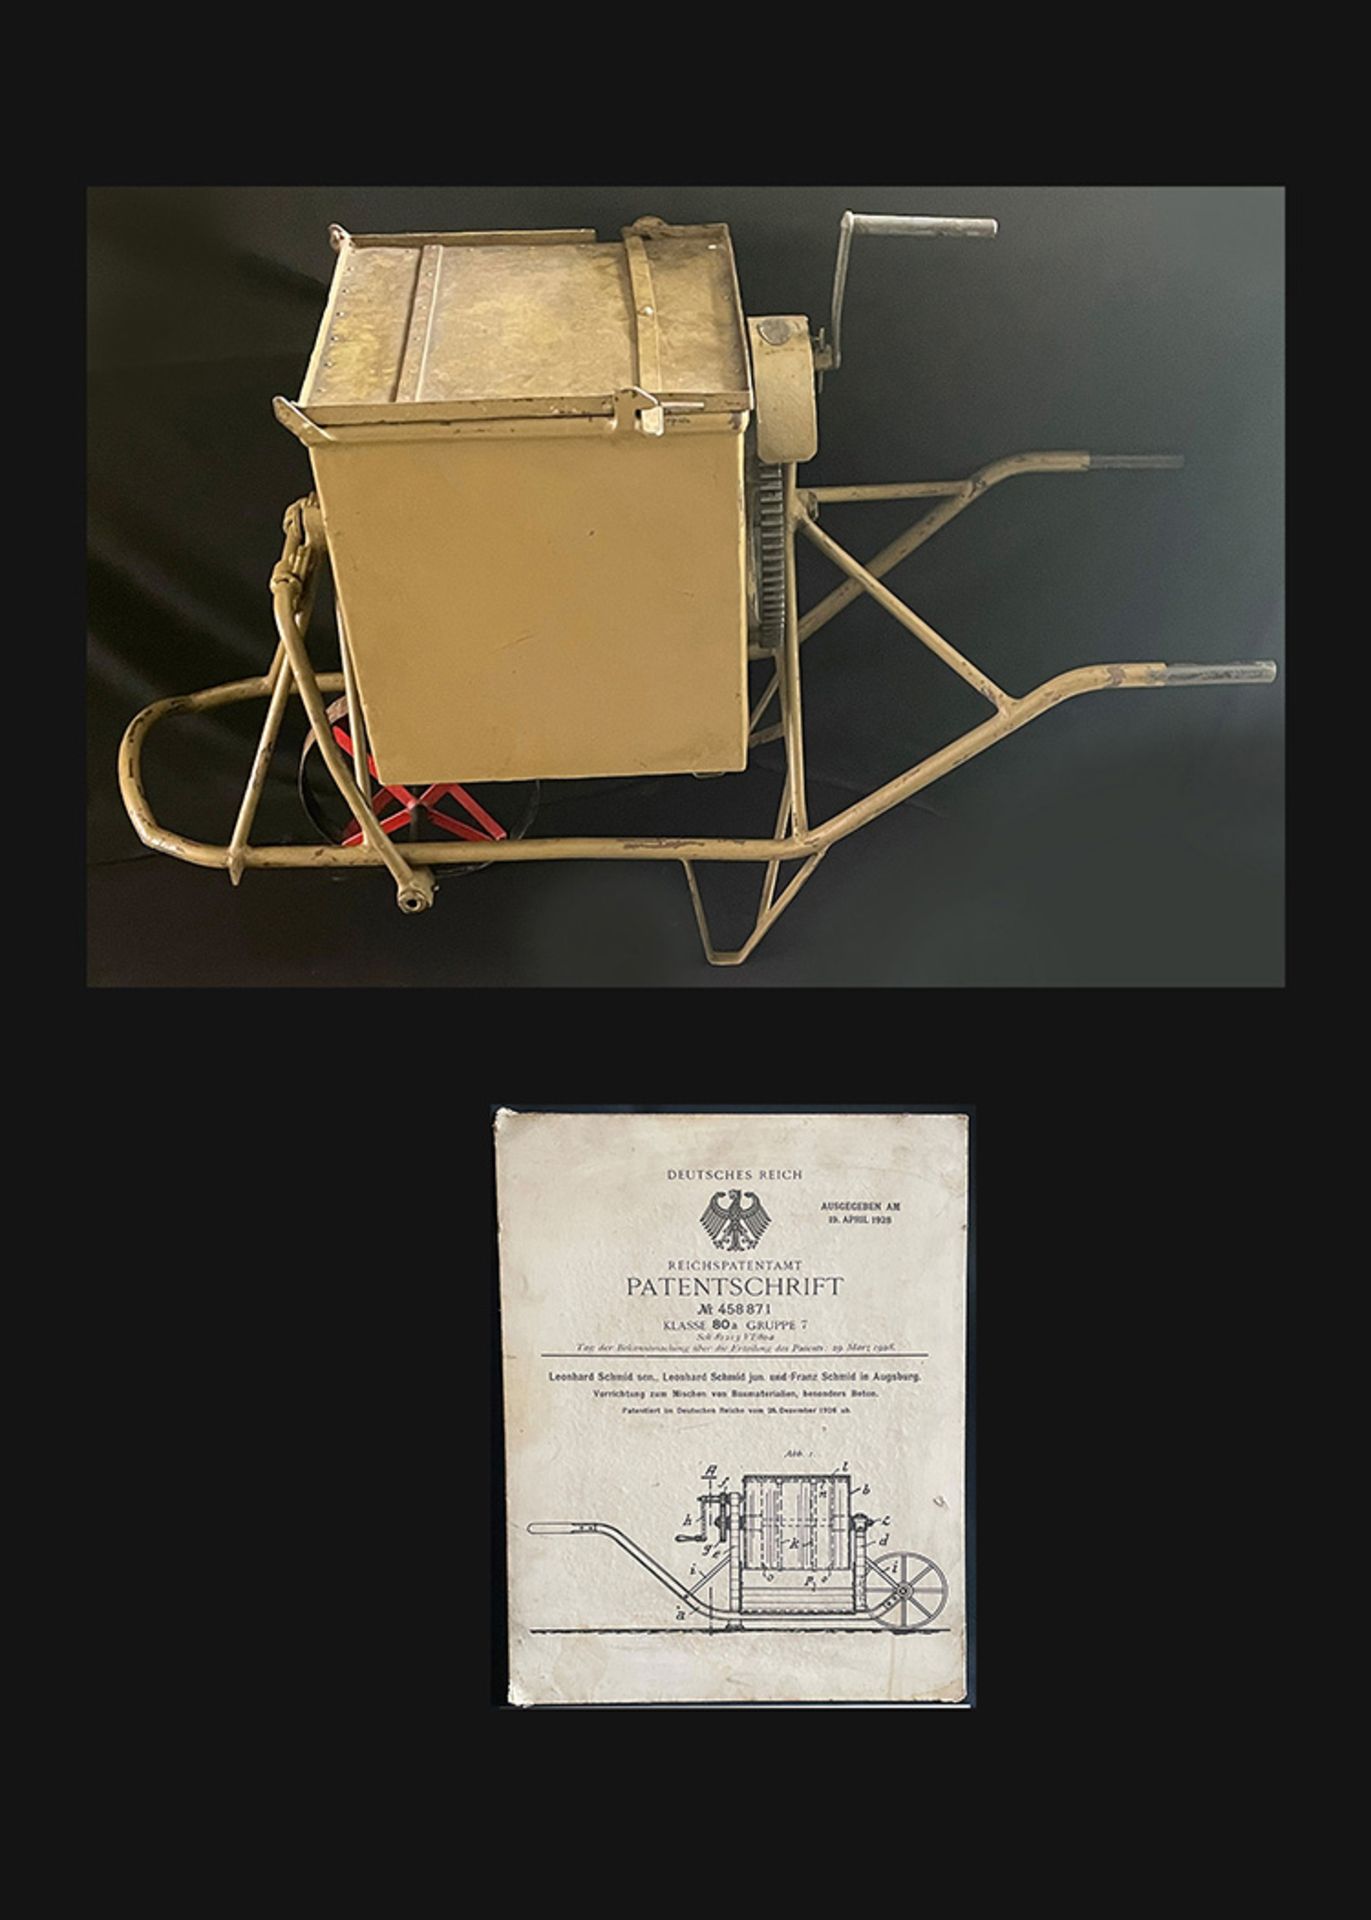 Patentierte Betonmischmaschine 1920/30er Jahre. Der Betonmischer wurde am 28. Dezember 1926 in der